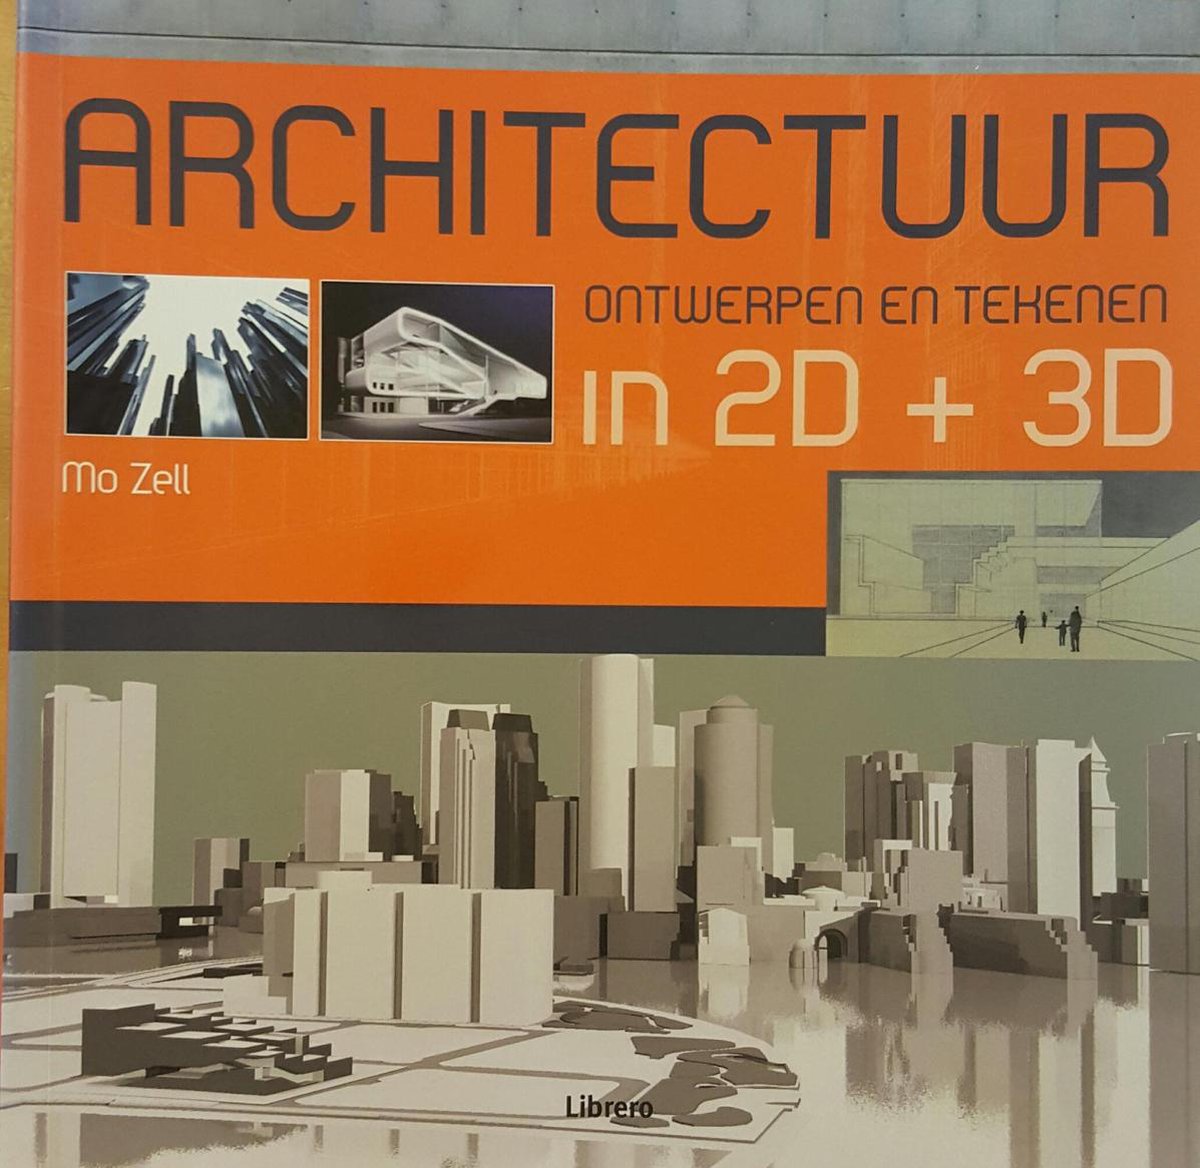 Bol Com Architectuur Ontwerpen En Tekenen In 2d 3d Mo Zell Boeken